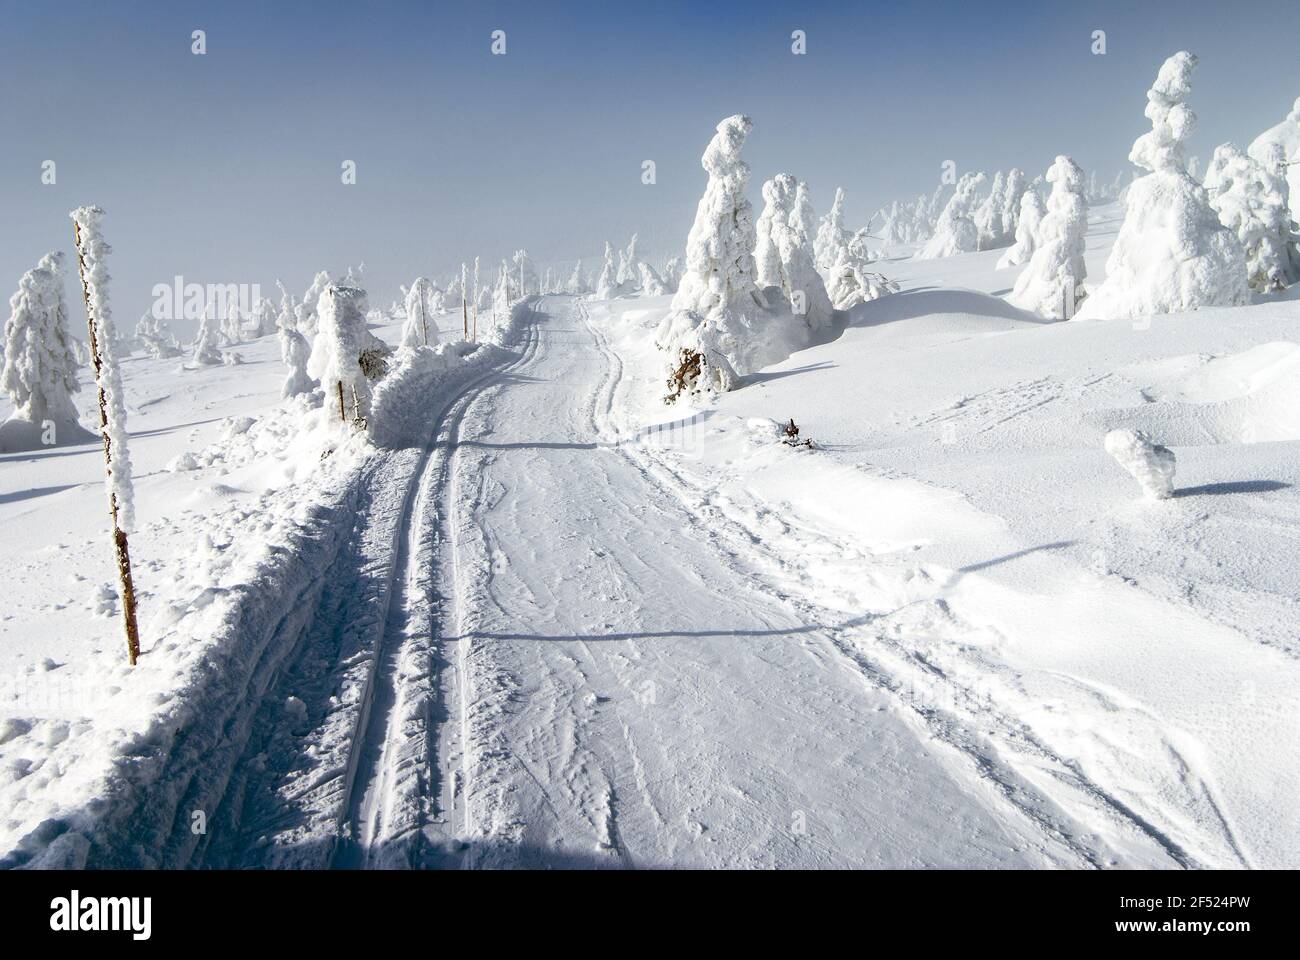 Wintry landscape paysage avec modification du ski de façon Banque D'Images